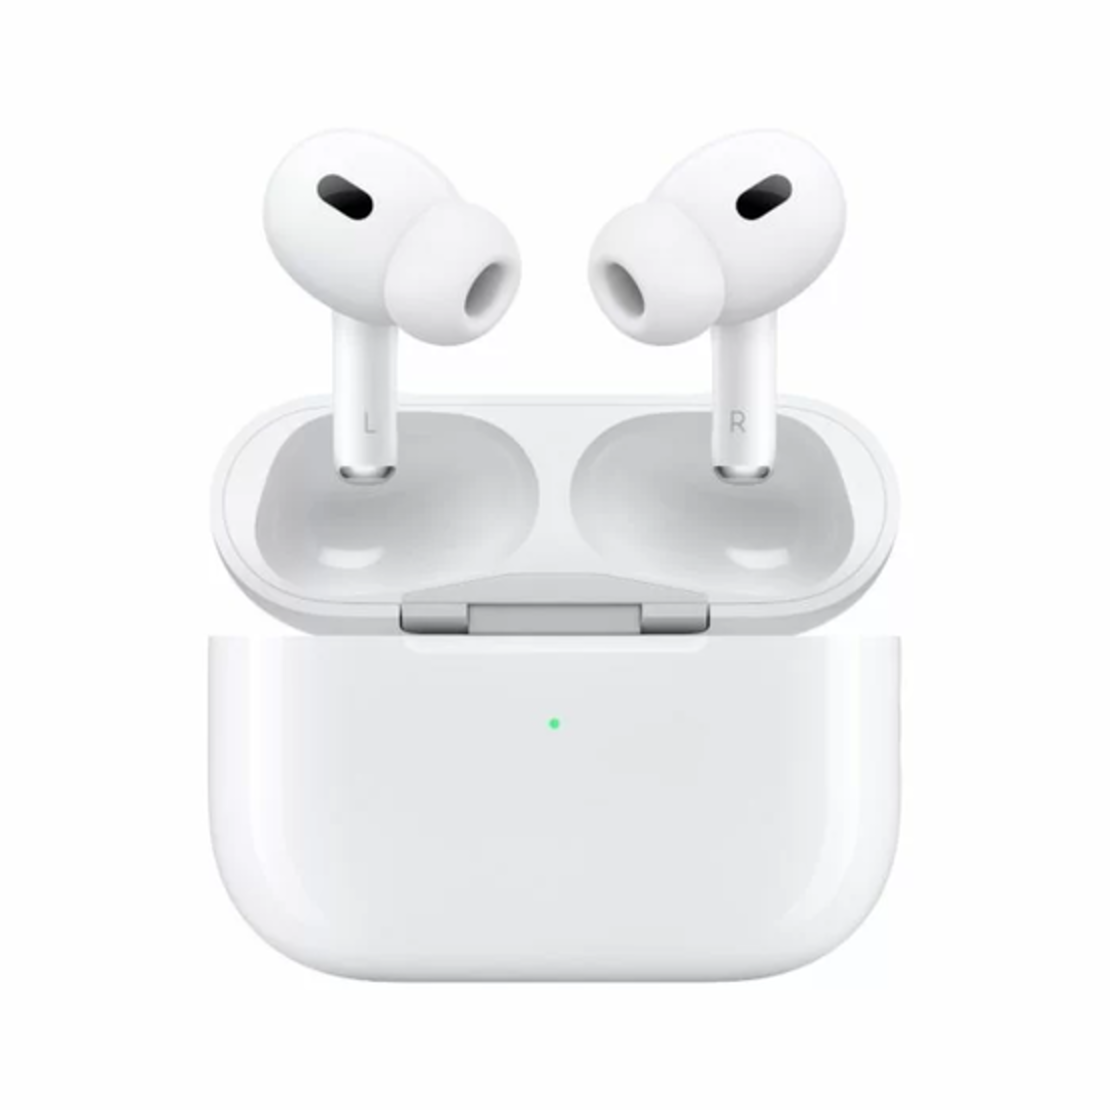 אוזניות אלחוטיות כולל מארז עם טעינה אלחוטית MagSafe וחיבור USB-C Apple AirPods Pro (2nd Generation)